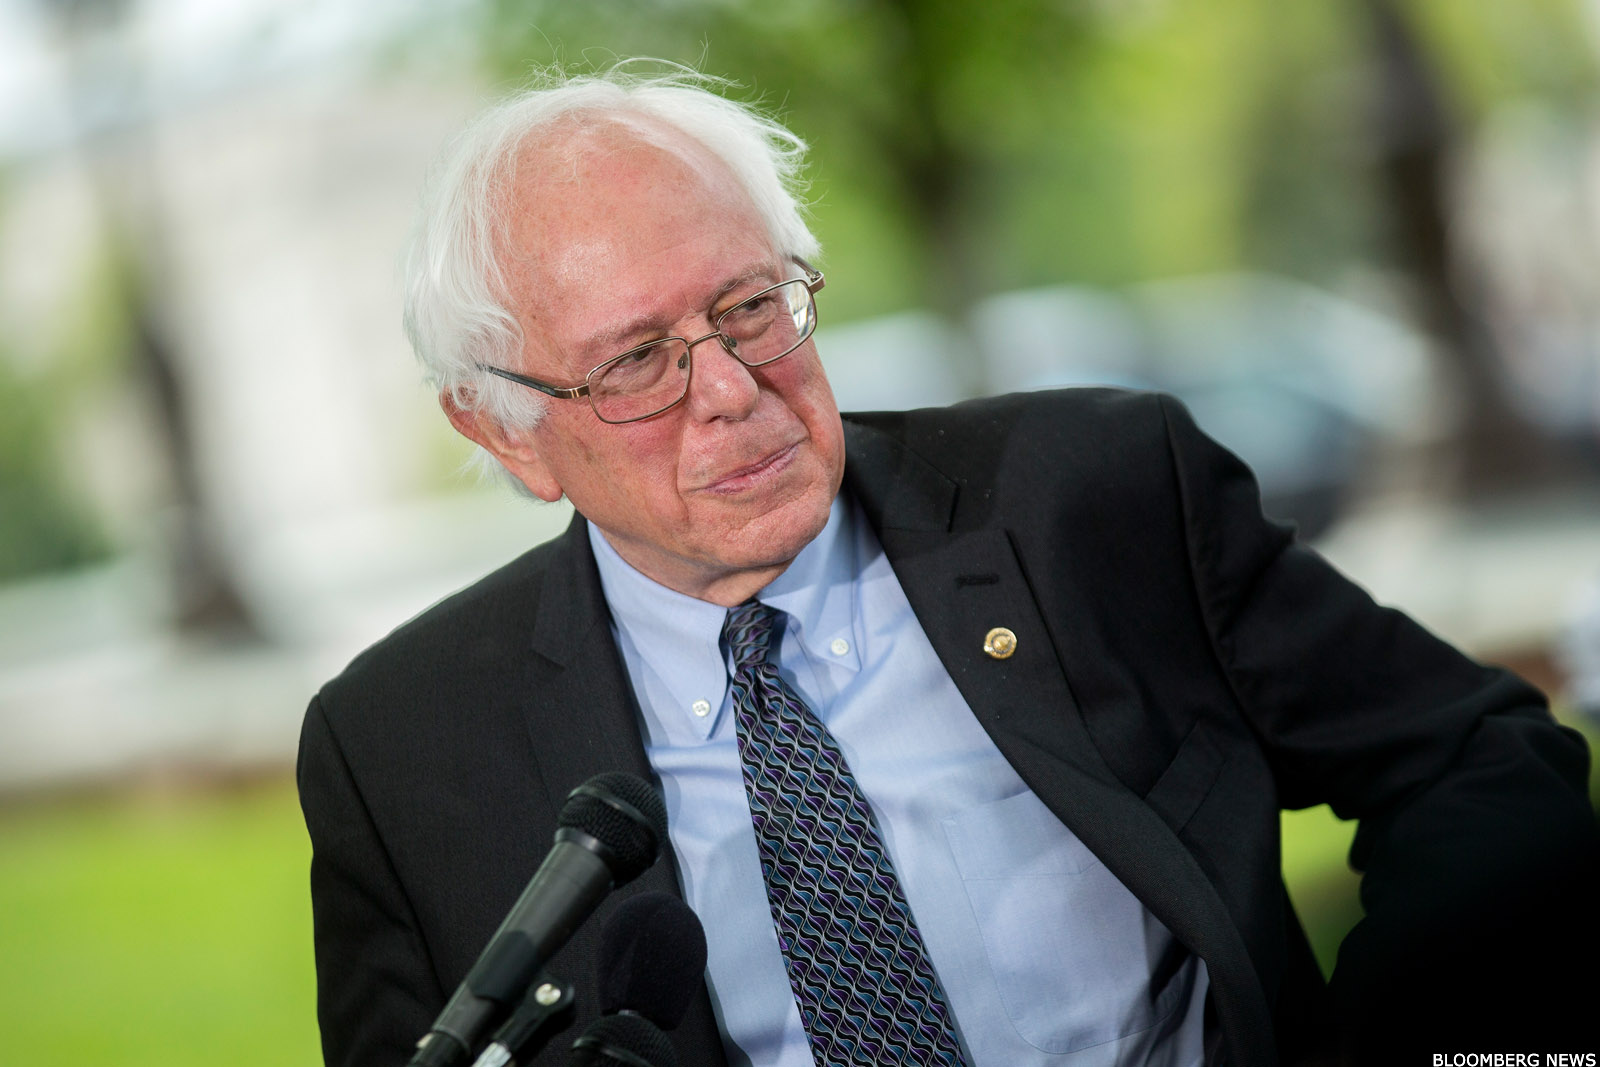 What Is Bernie Sanders' Net Worth? - TheStreet